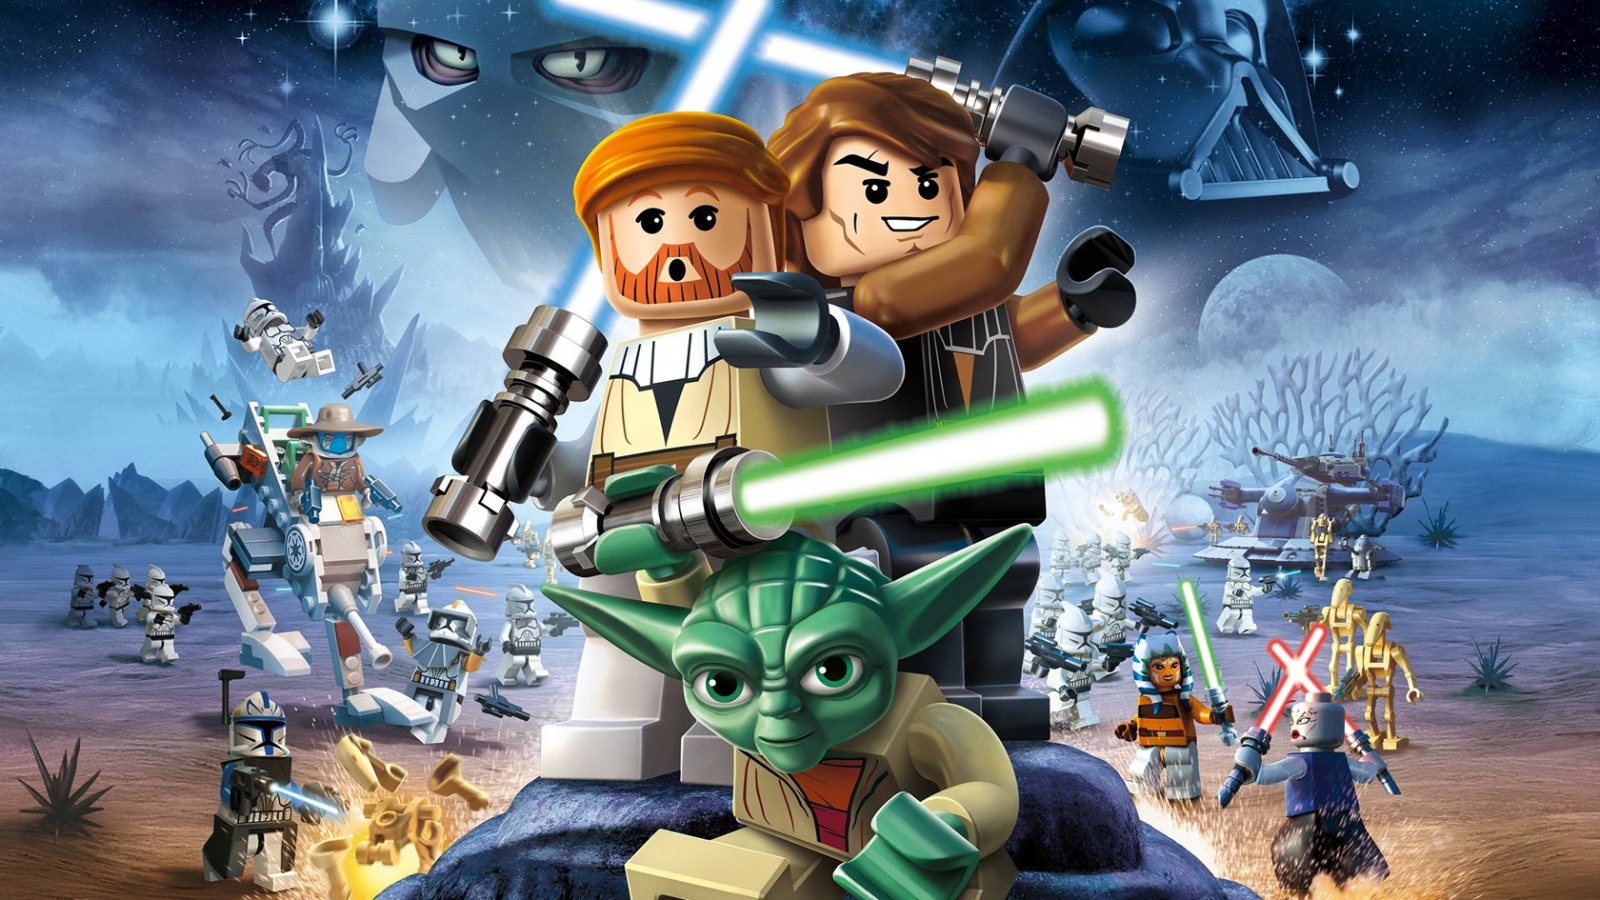 Lego Star Wars III hd 1600x900   imagenes   wallpapers gratis